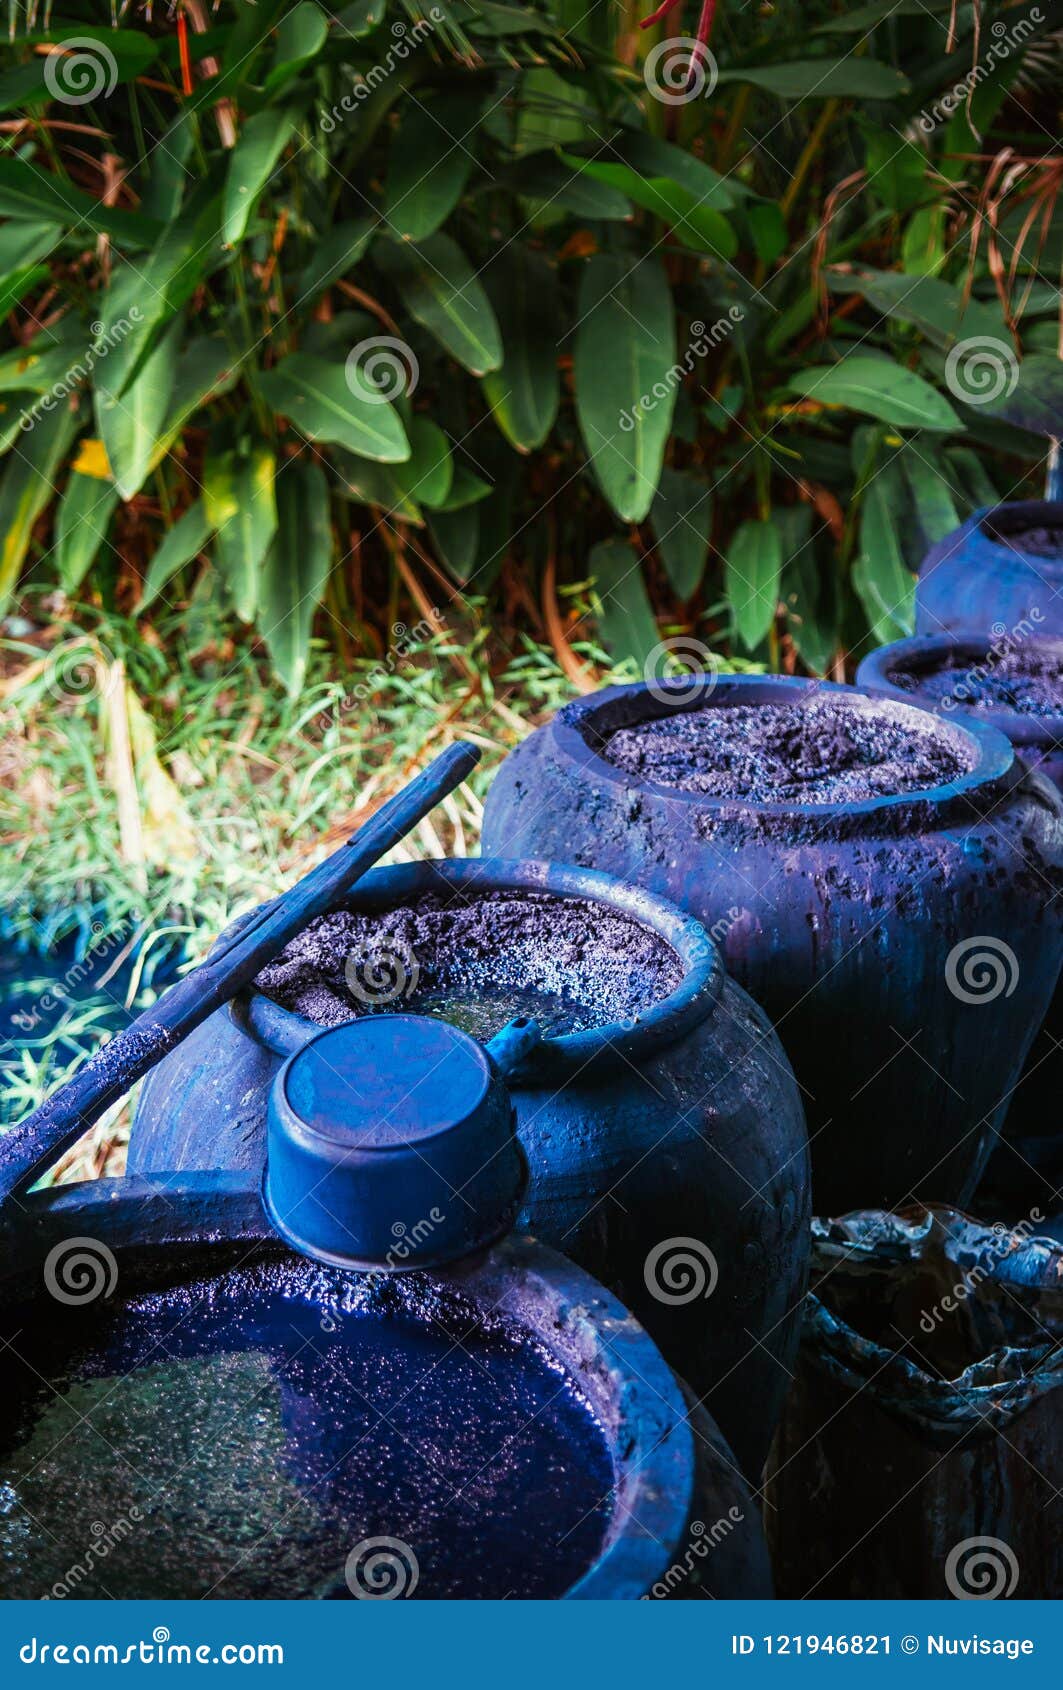 process of making indigo dye, indigo plant fermentation in clay